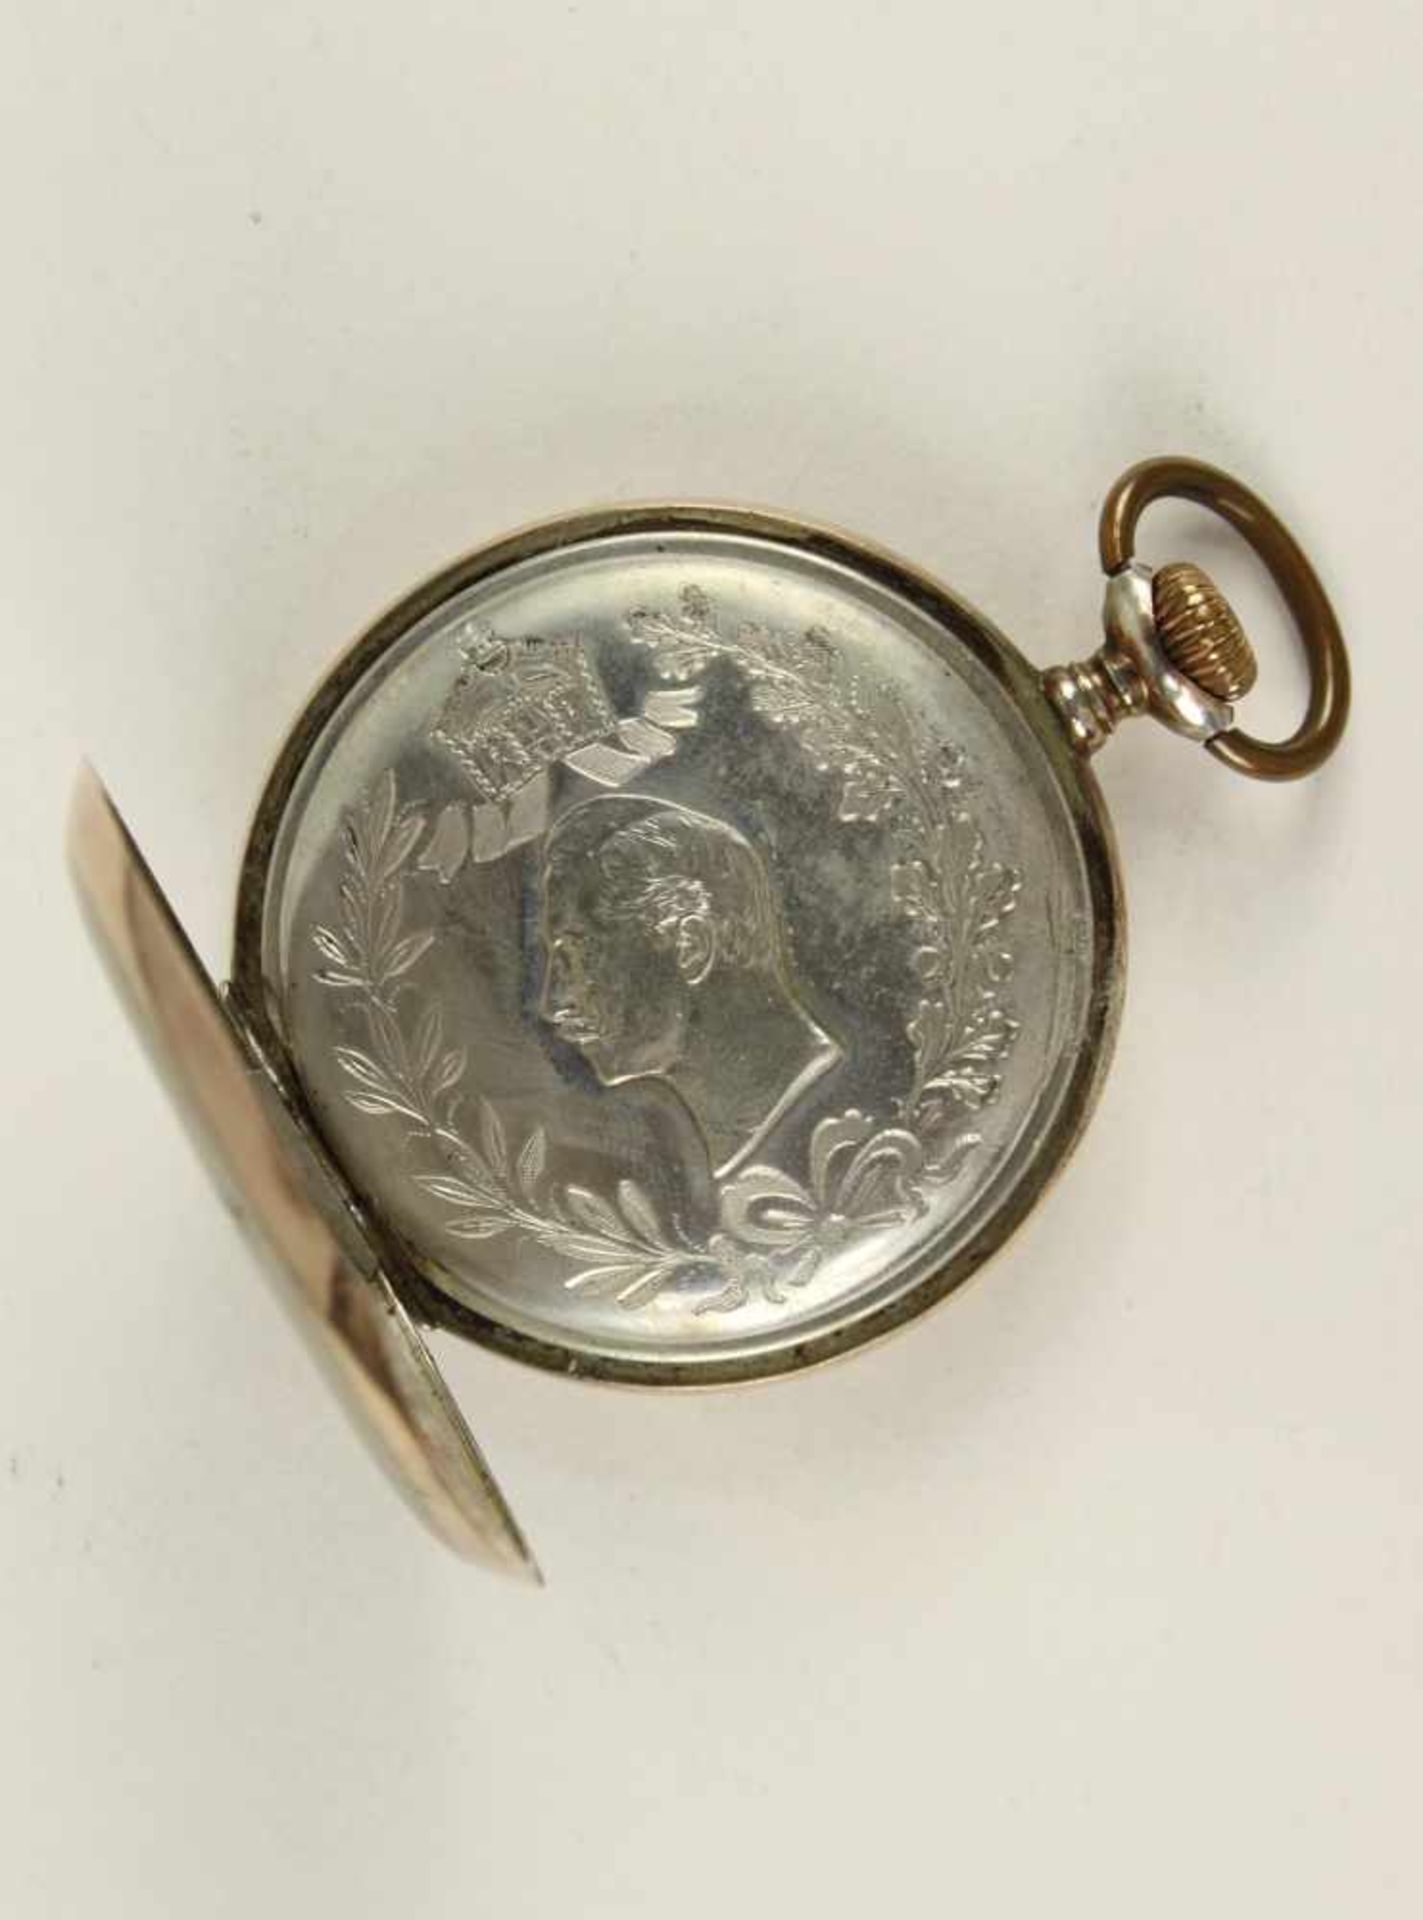 Geschenkuhr Kaiser Wilhelm II.,Marke "Longines", Silber "800", weißes Zifferblatt mit arabischen - Bild 2 aus 3